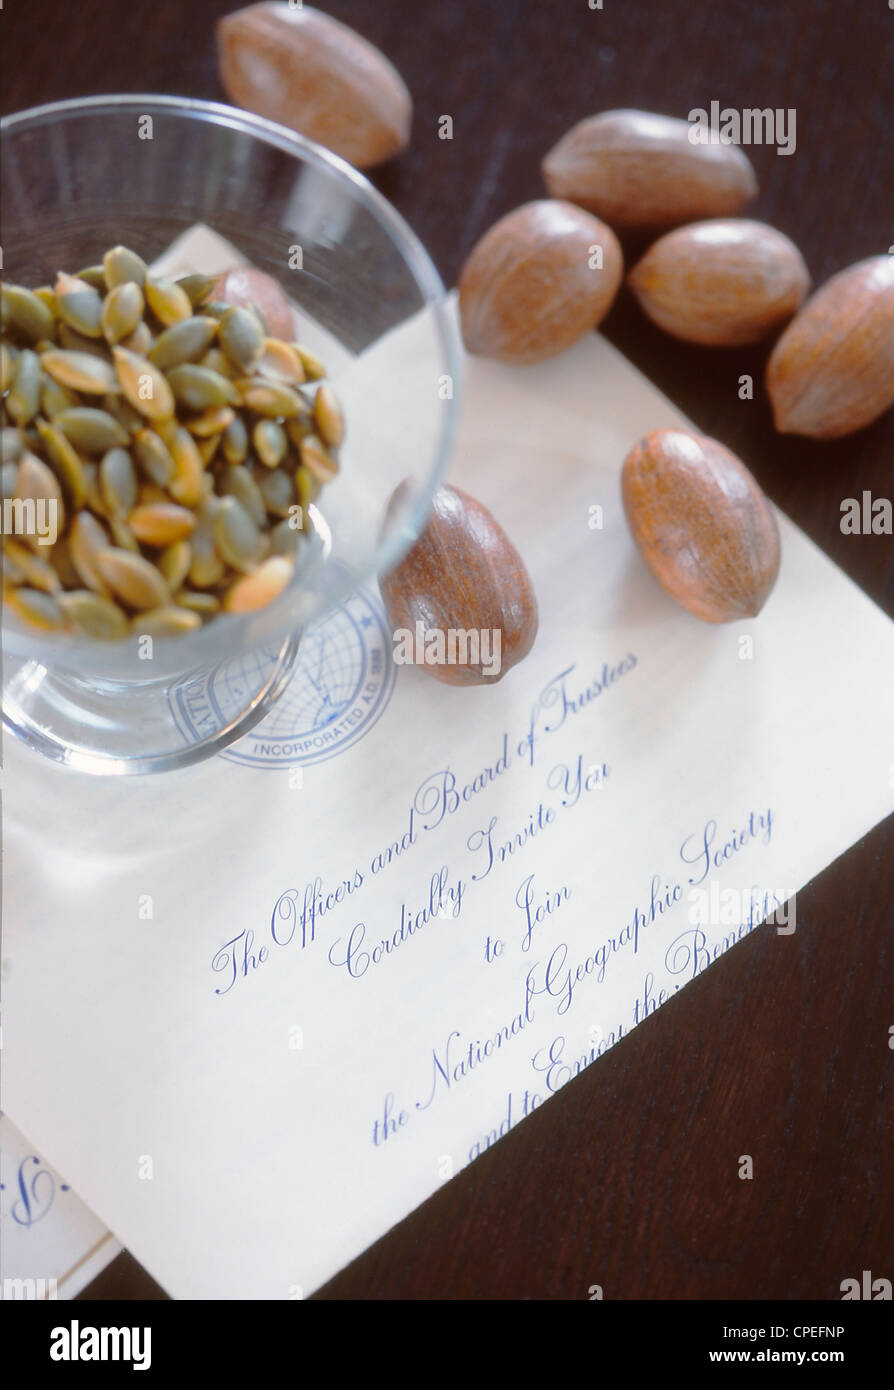 Bol de graines comestibles, les noix et le papier sur la table Banque D'Images